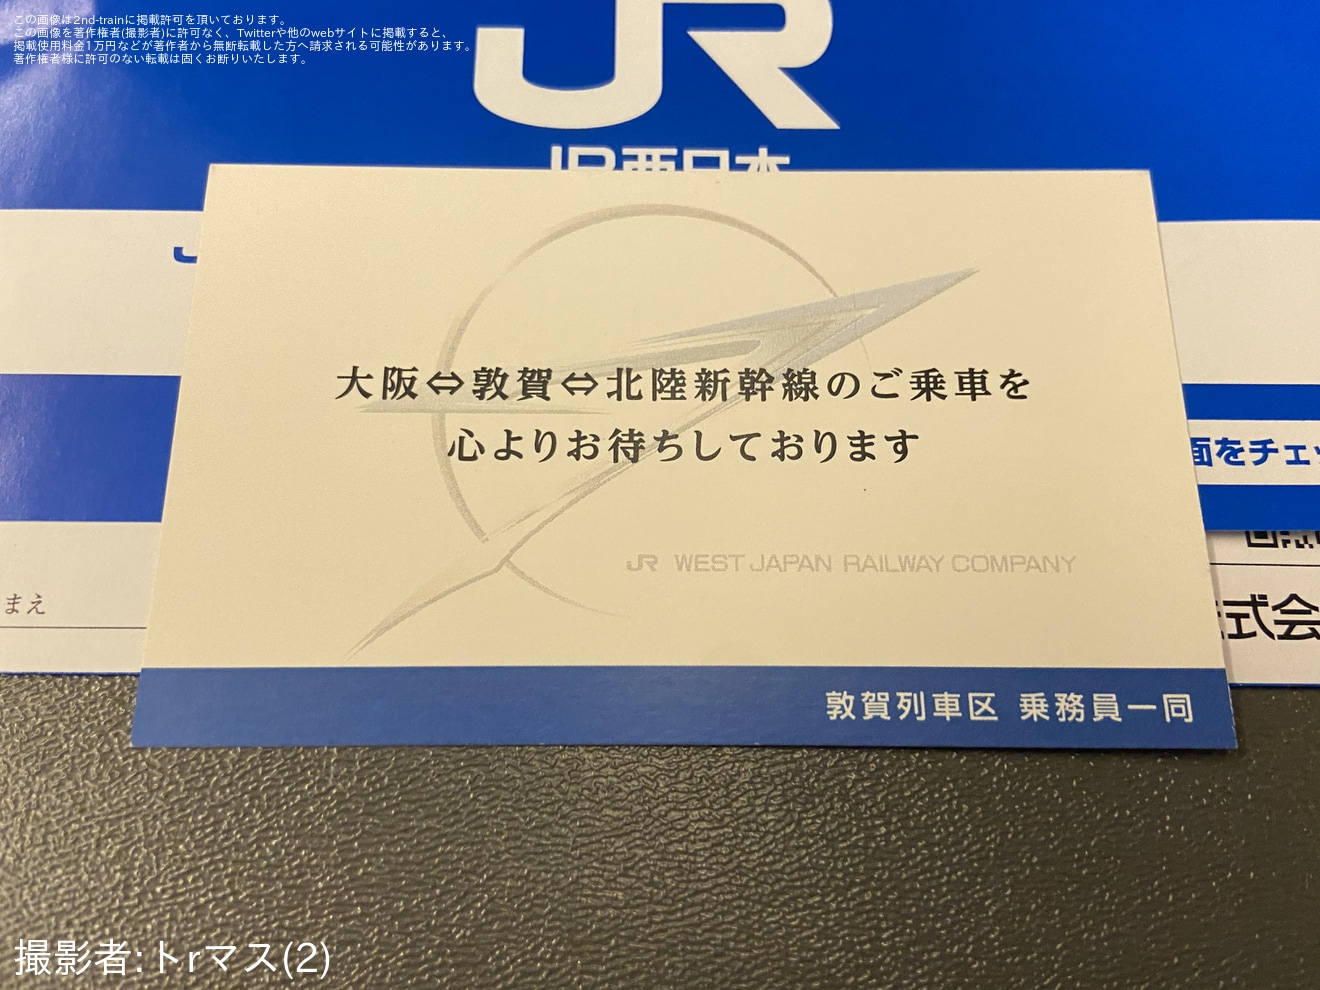 【JR西】特急サンダーバード 金沢〜敦賀間の運行終了の拡大写真